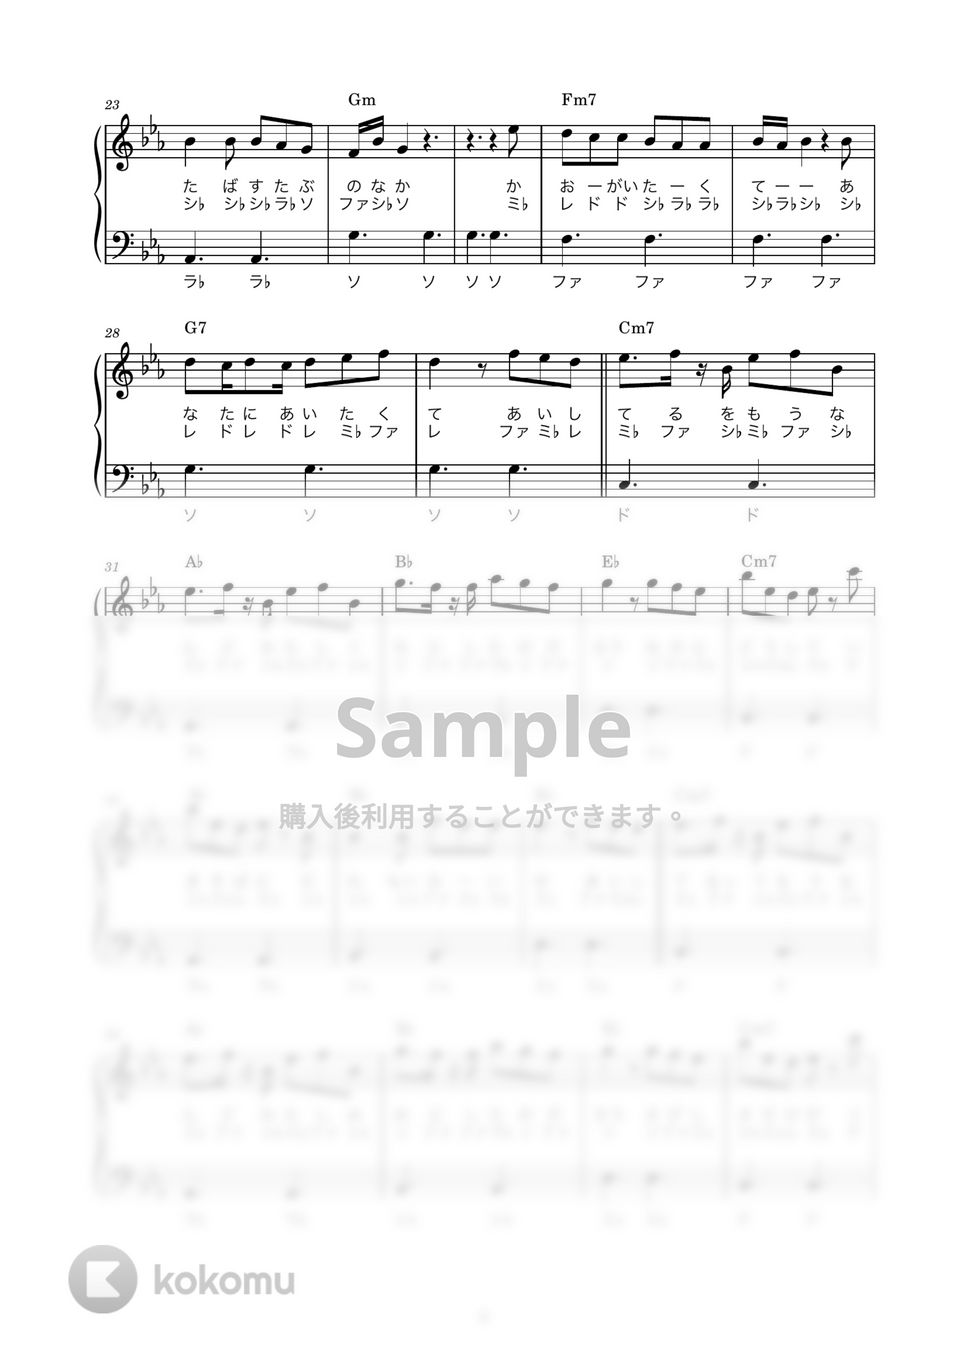 優里 - メリーゴーランド (かんたん / 歌詞付き / ドレミ付き / 初心者) by piano.tokyo